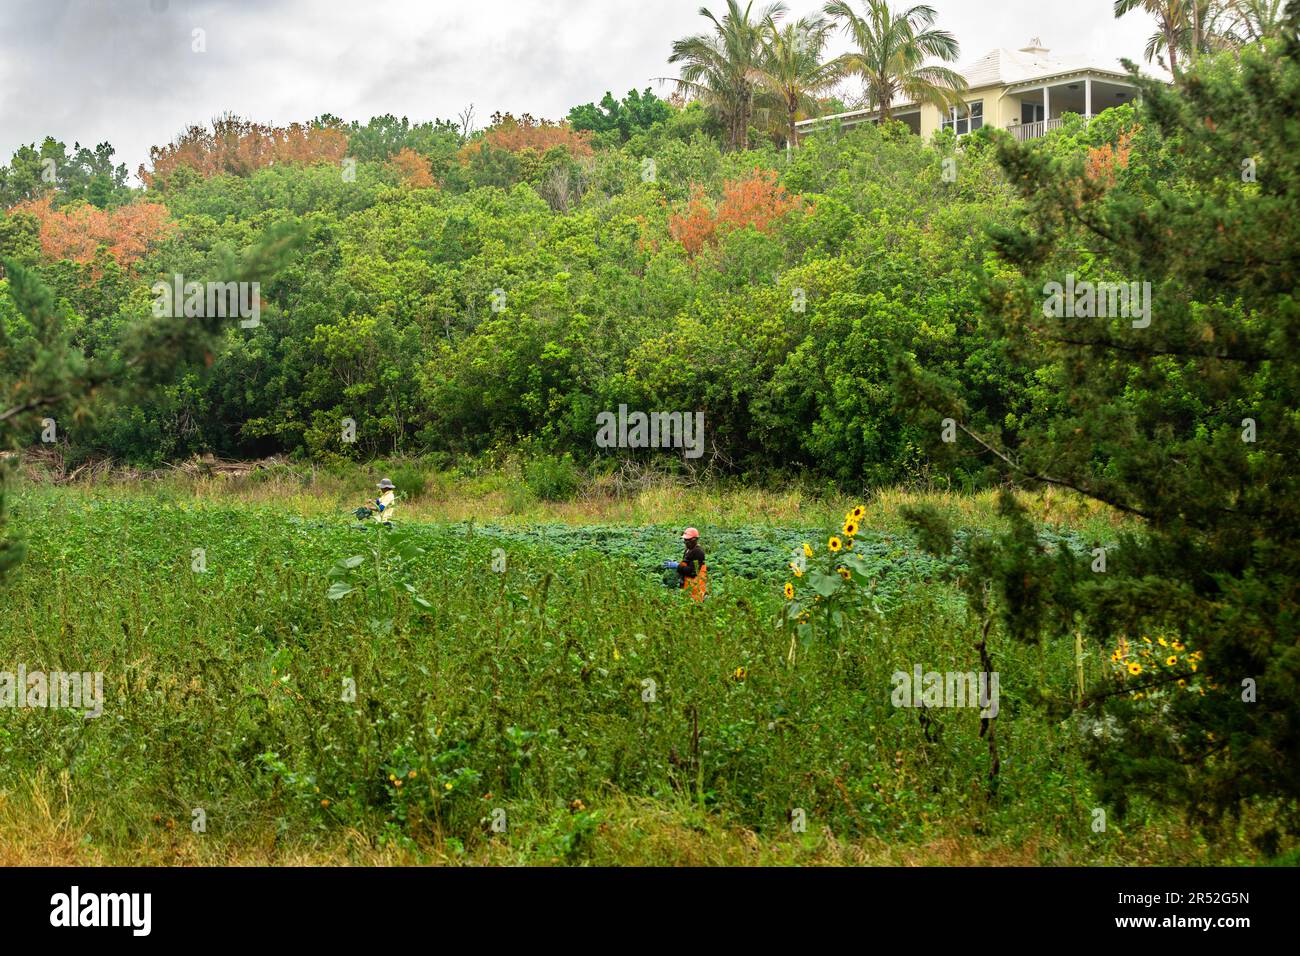 Landarbeiter pflücken Grünkohl in einem kleinen landwirtschaftlichen Betrieb in der Gemeinde Paget auf Bermuda. Stockfoto